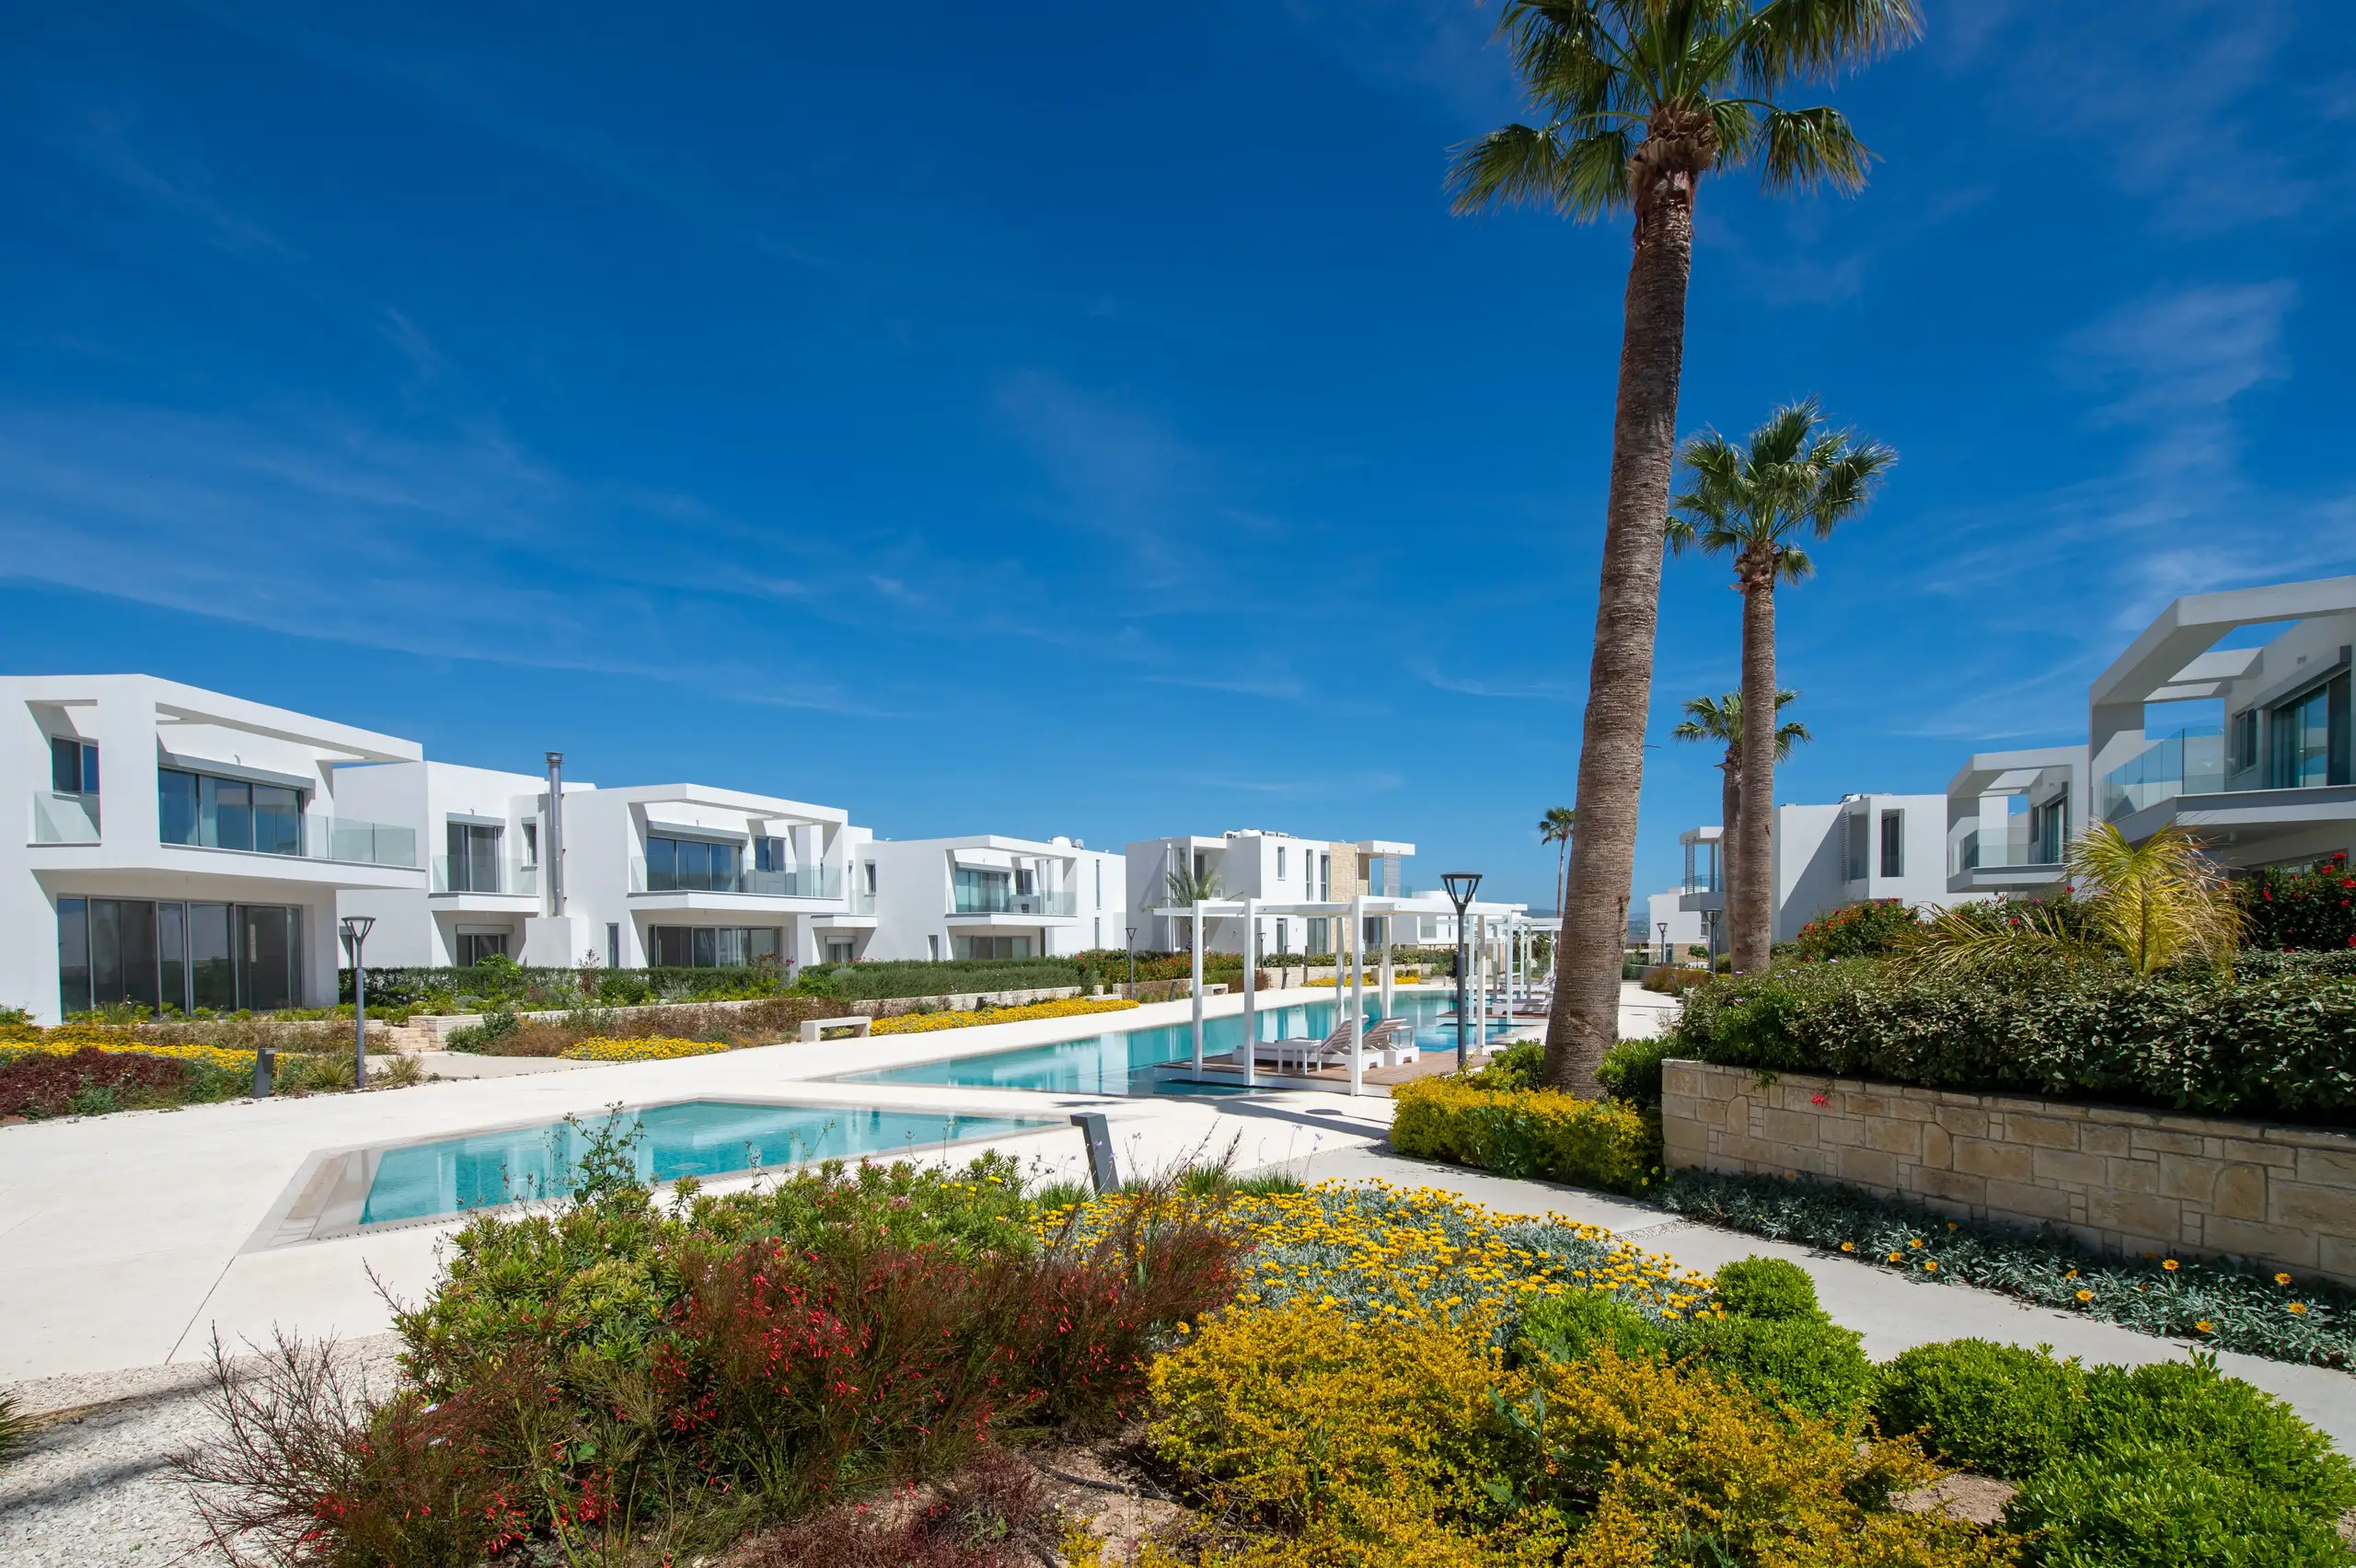 Acropolis Homes - Coral Seas Villas - Biuro Nieruchomości - Zdjęcie Nieruchomości - Osiedle